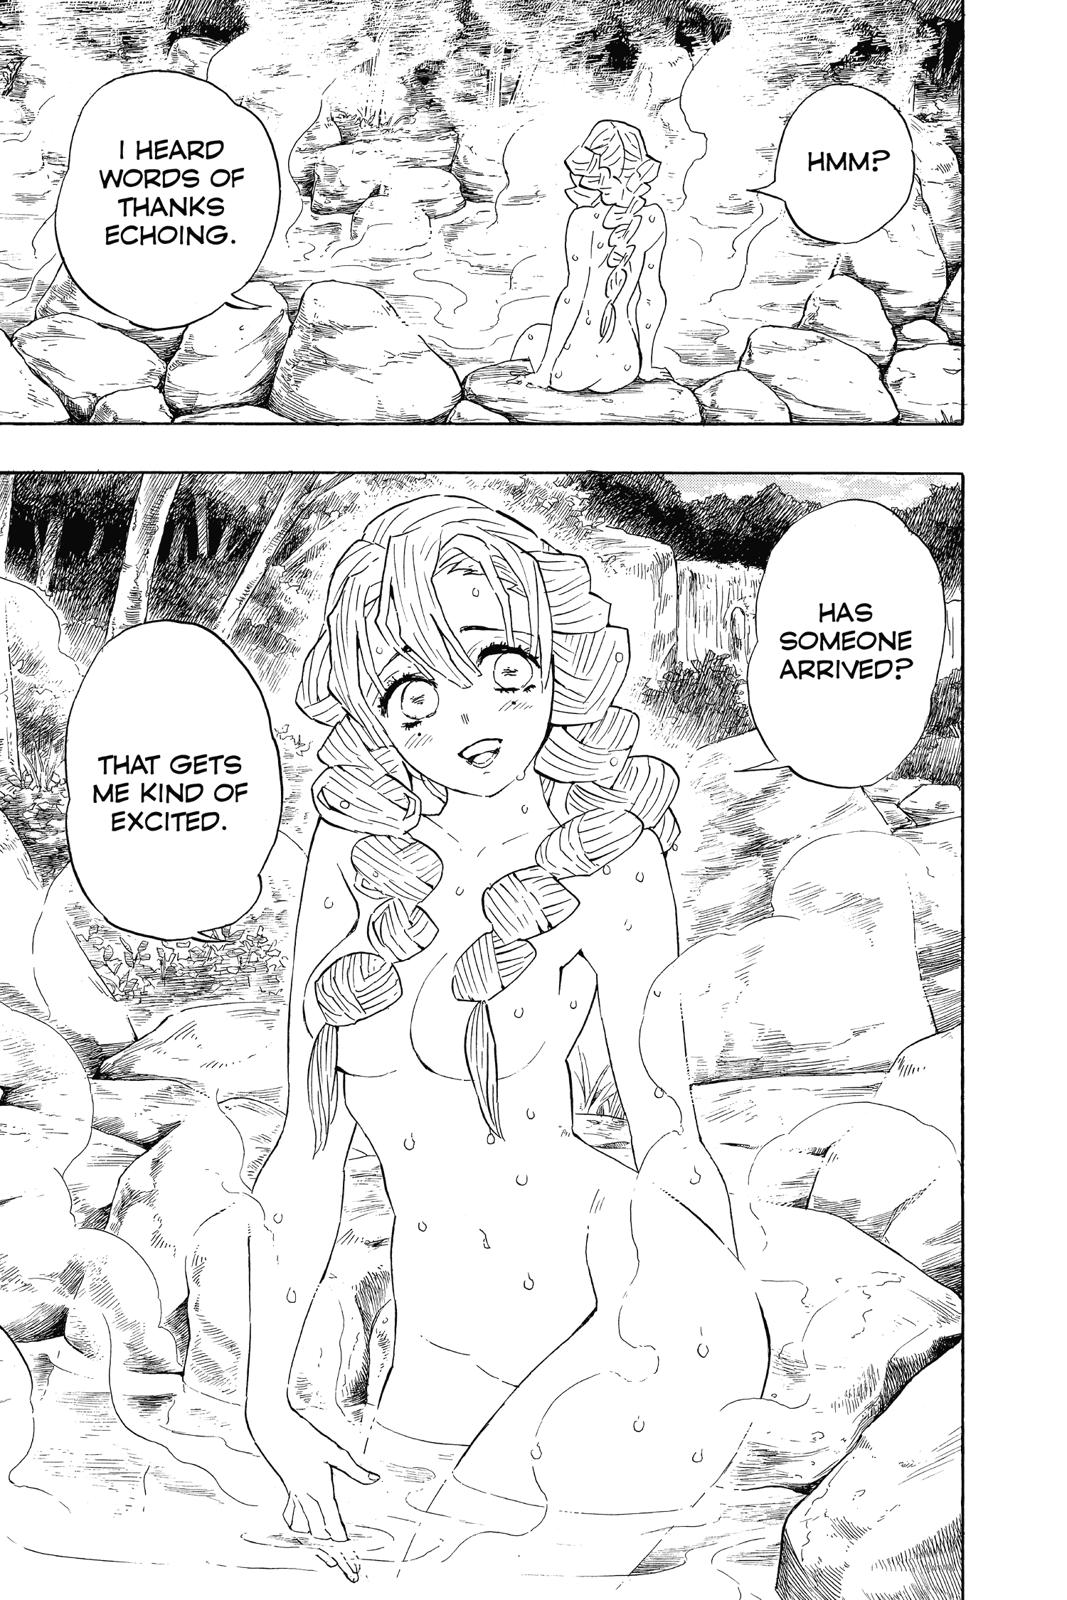 Demon Slayer Manga Manga Chapter - 100 - image 15